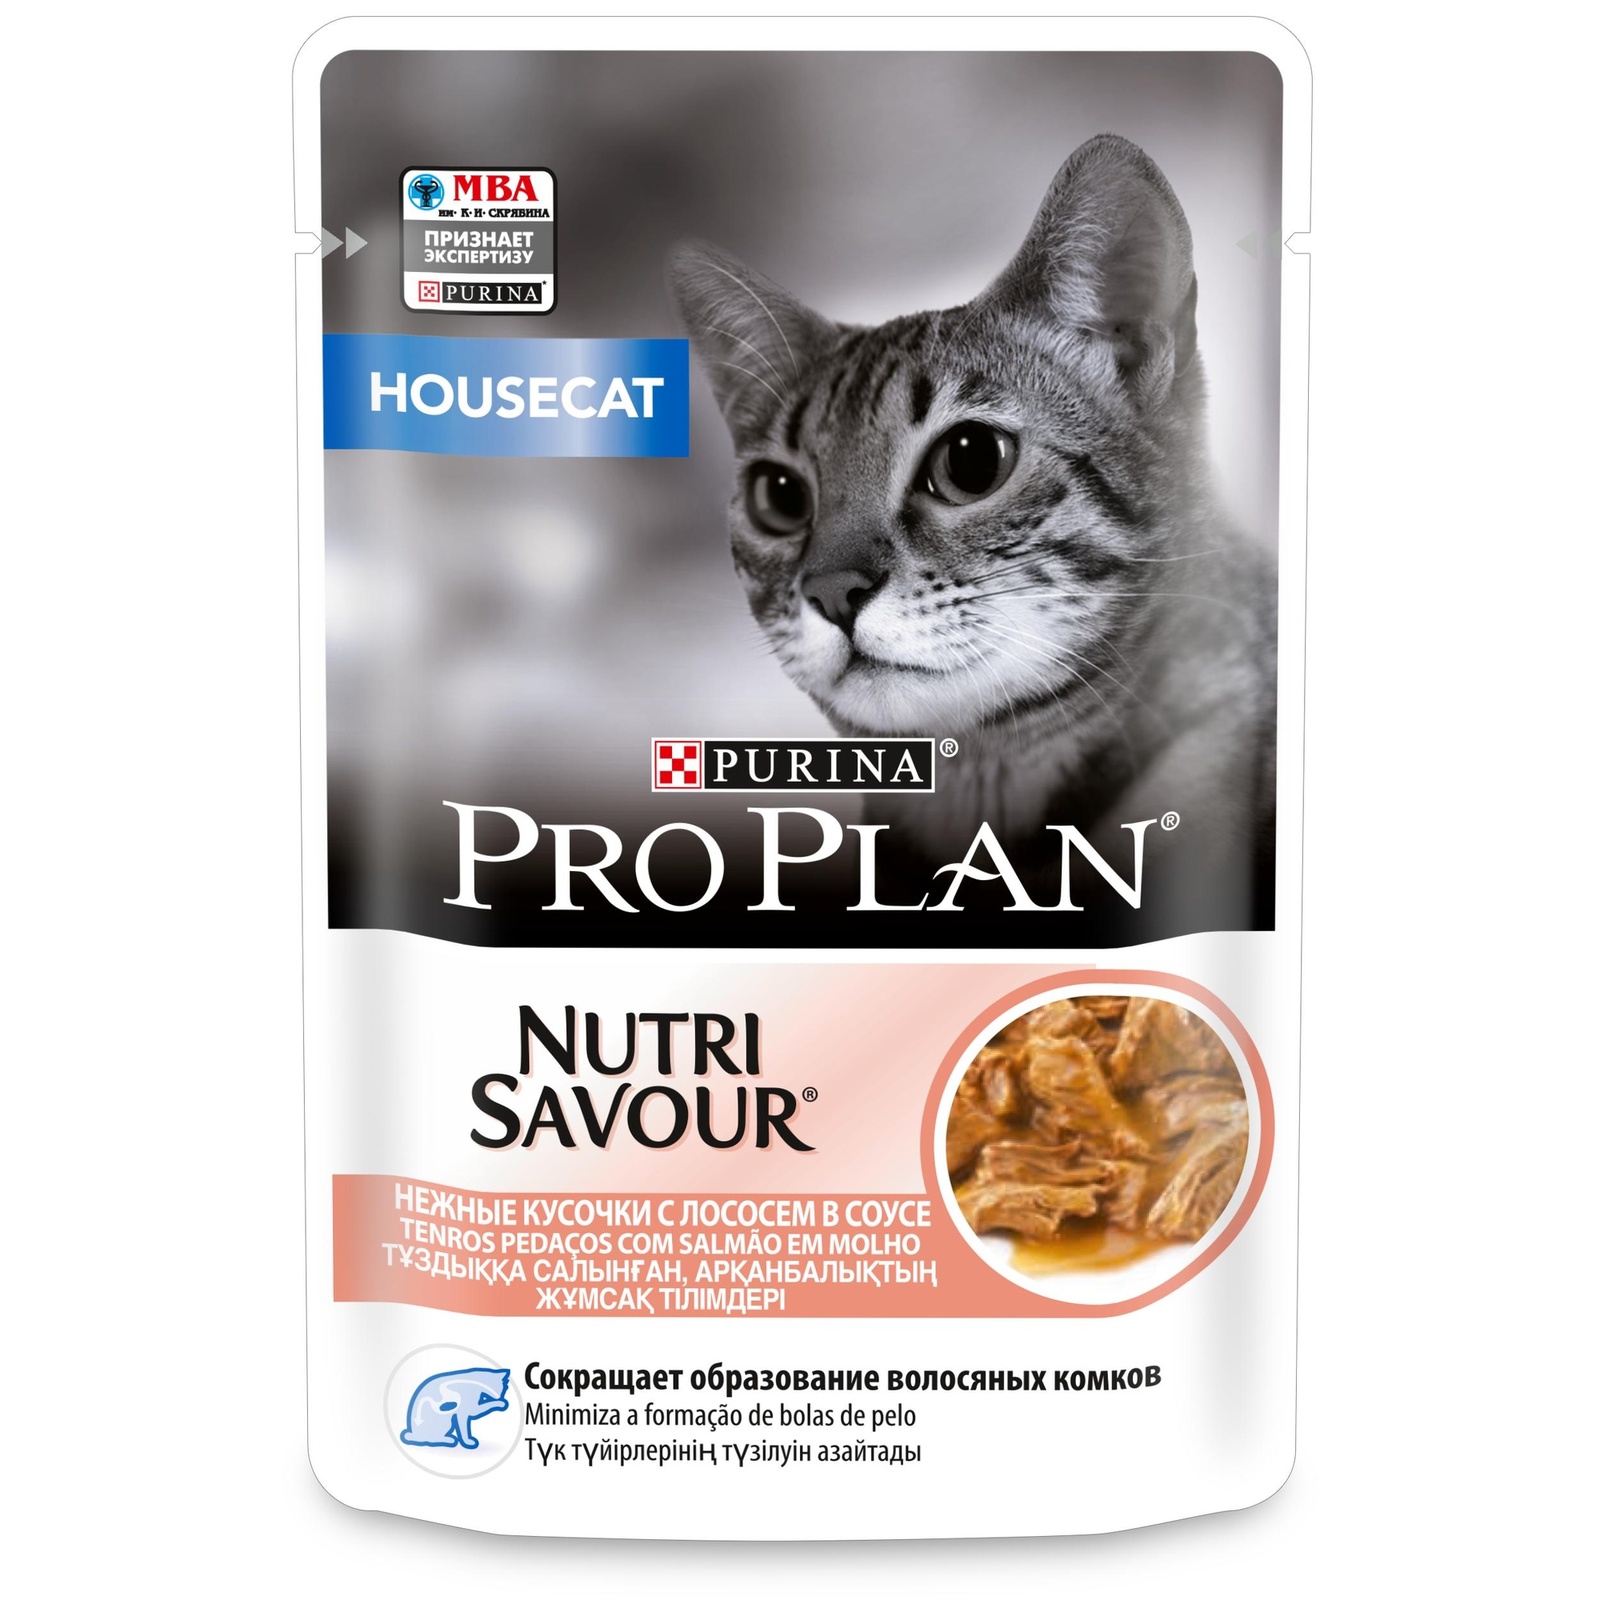 PRO PLAN (консервы) nutri Savour кусочки в соусе для домашних кошек, с лососем (1 шт) от Petshop